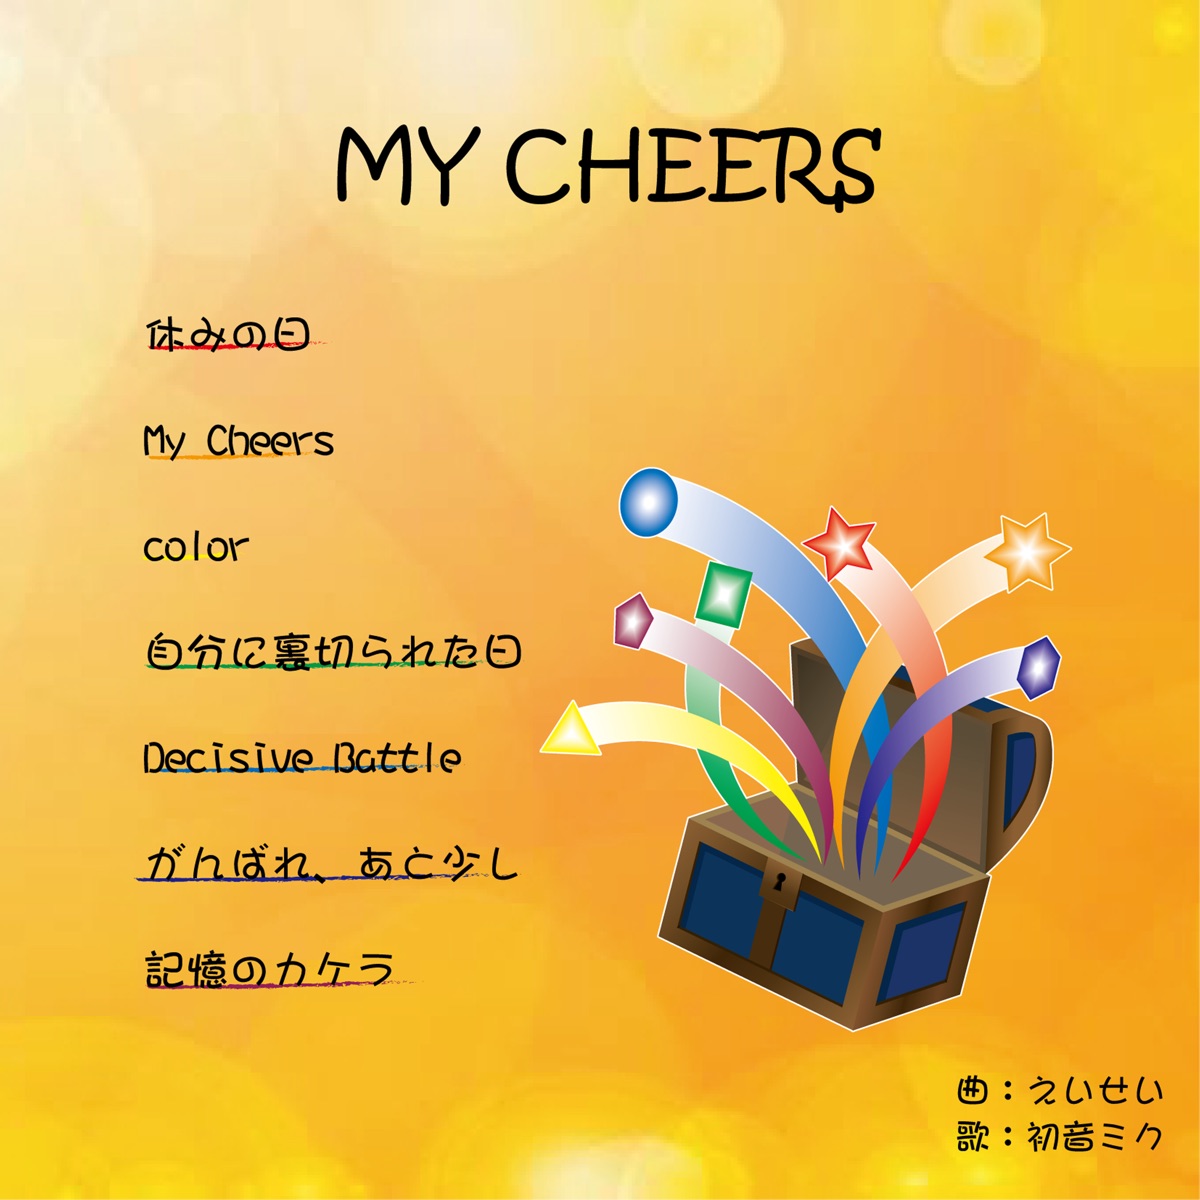 My cheers (feat. 初音ミク) - えいせいのアルバム - Apple Music